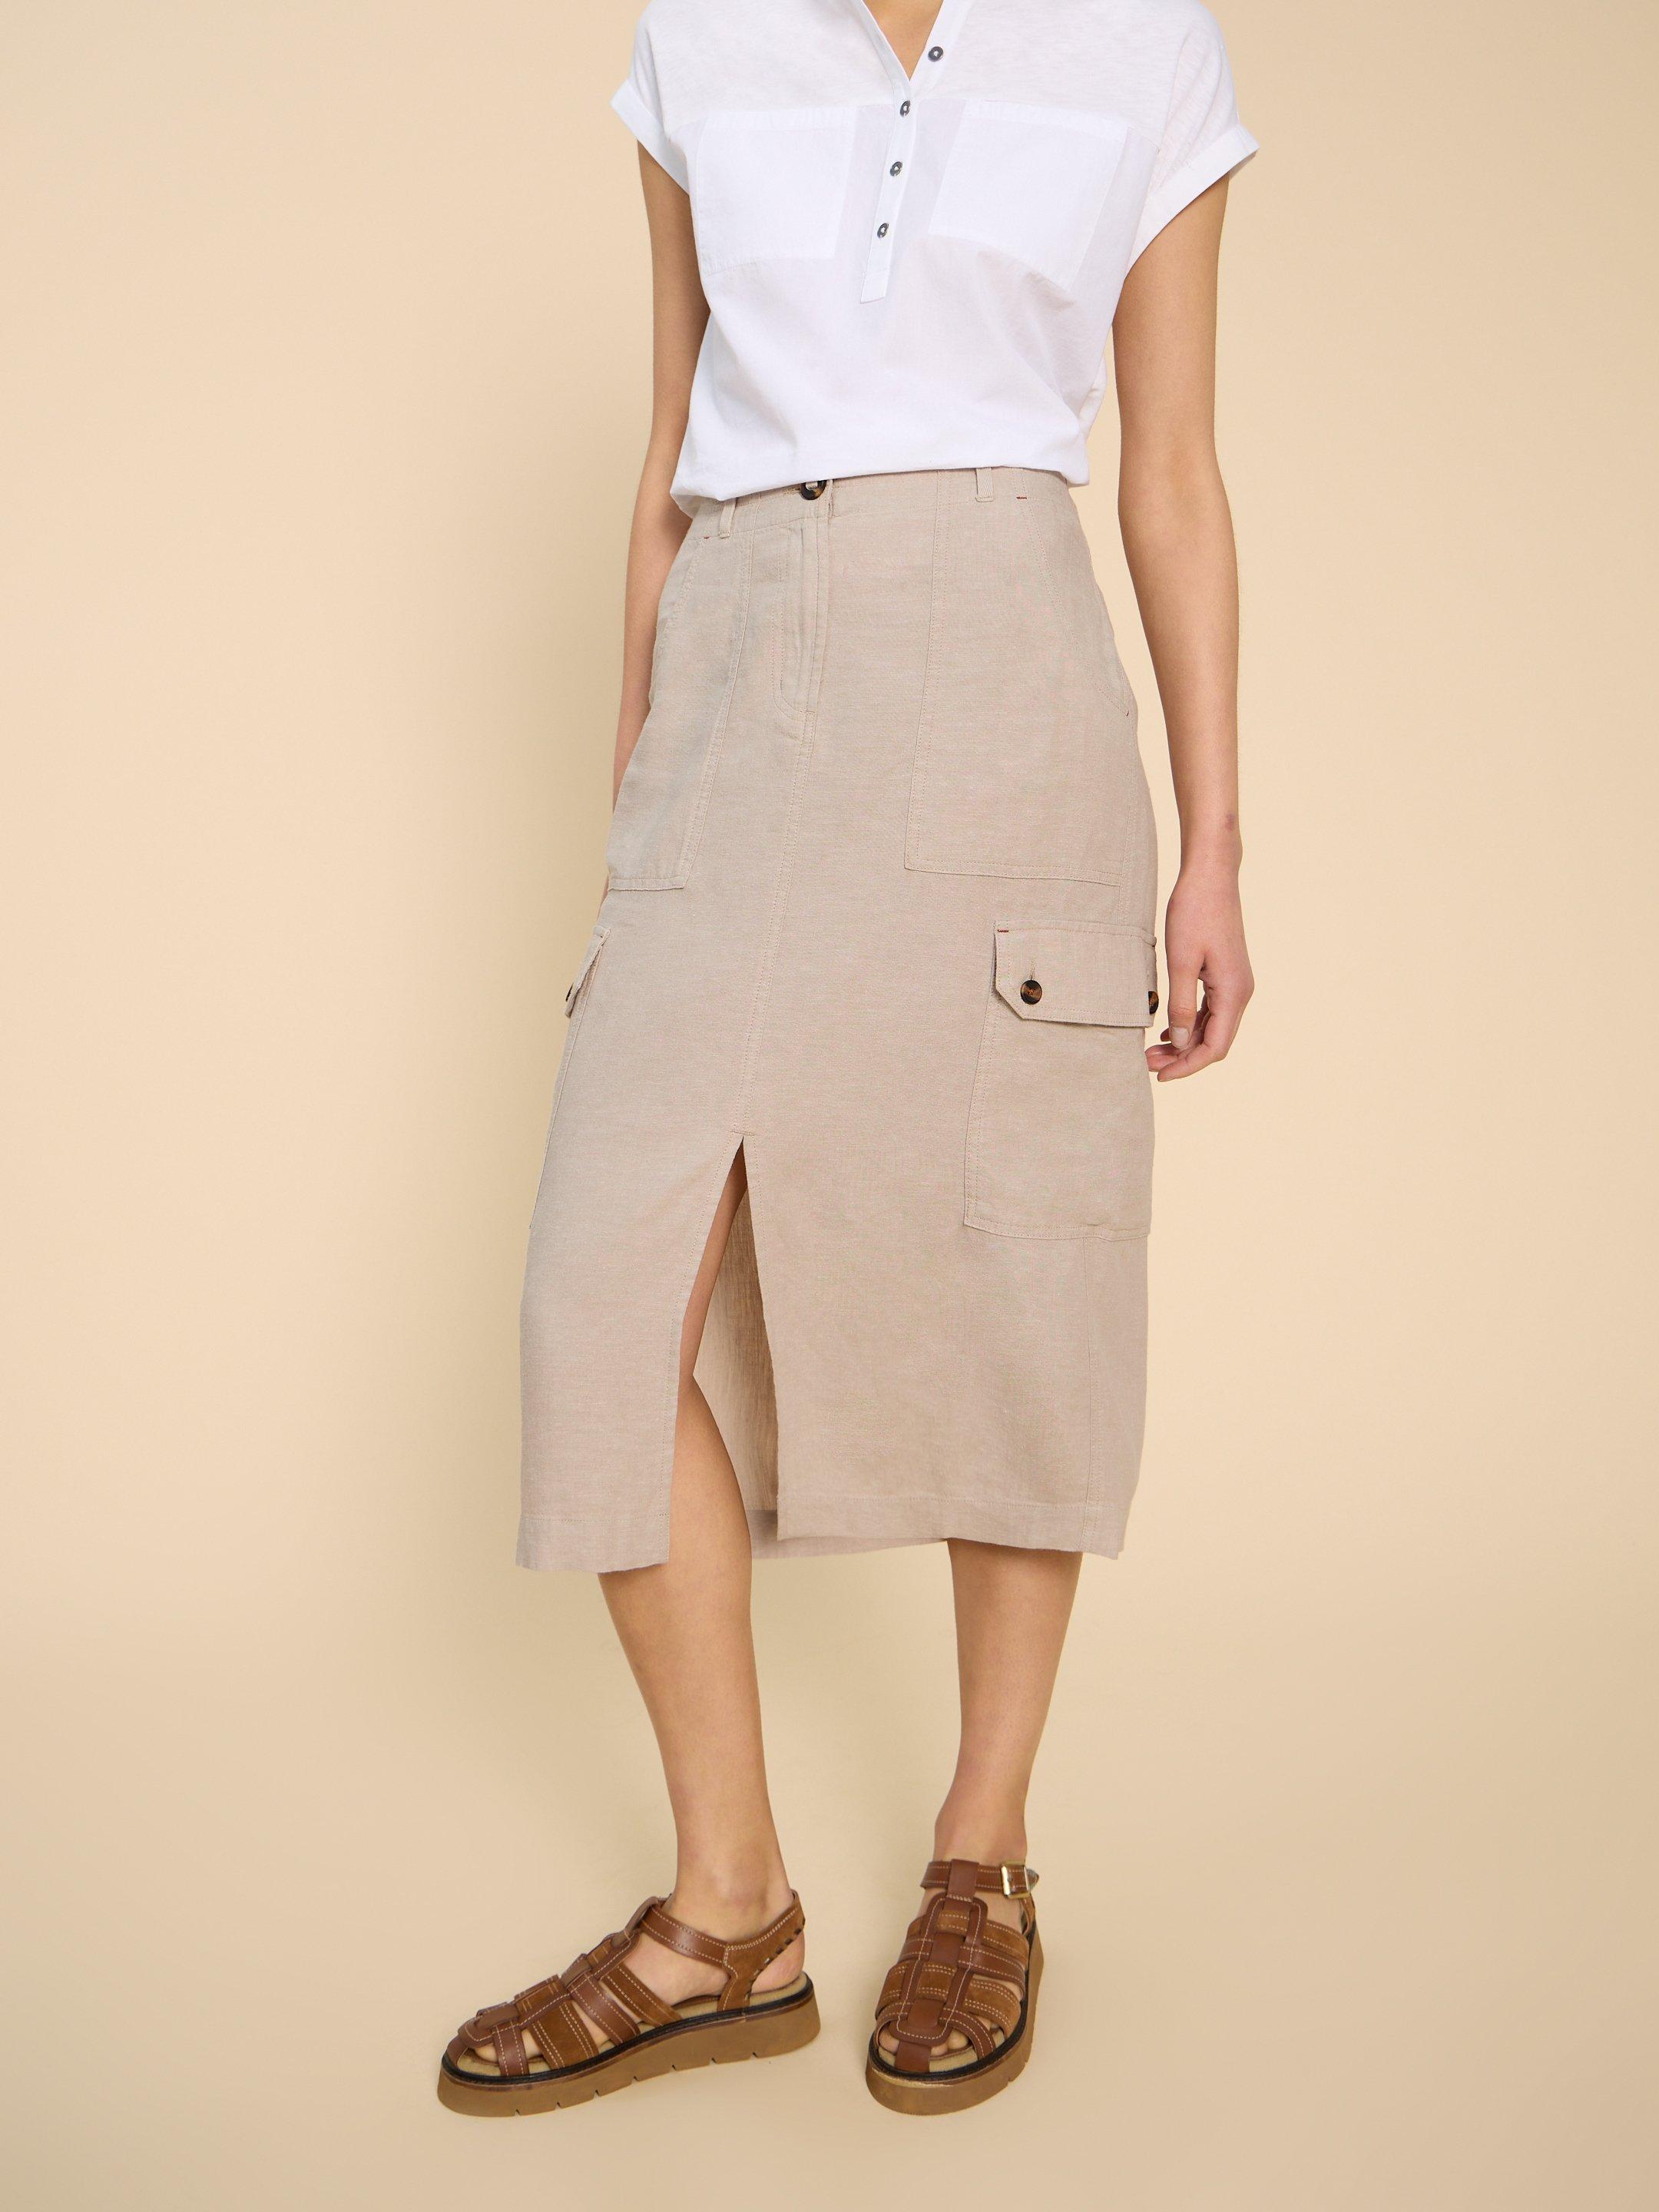 Arabella Linen Blend Skirt in LGT NAT - MODEL DETAIL